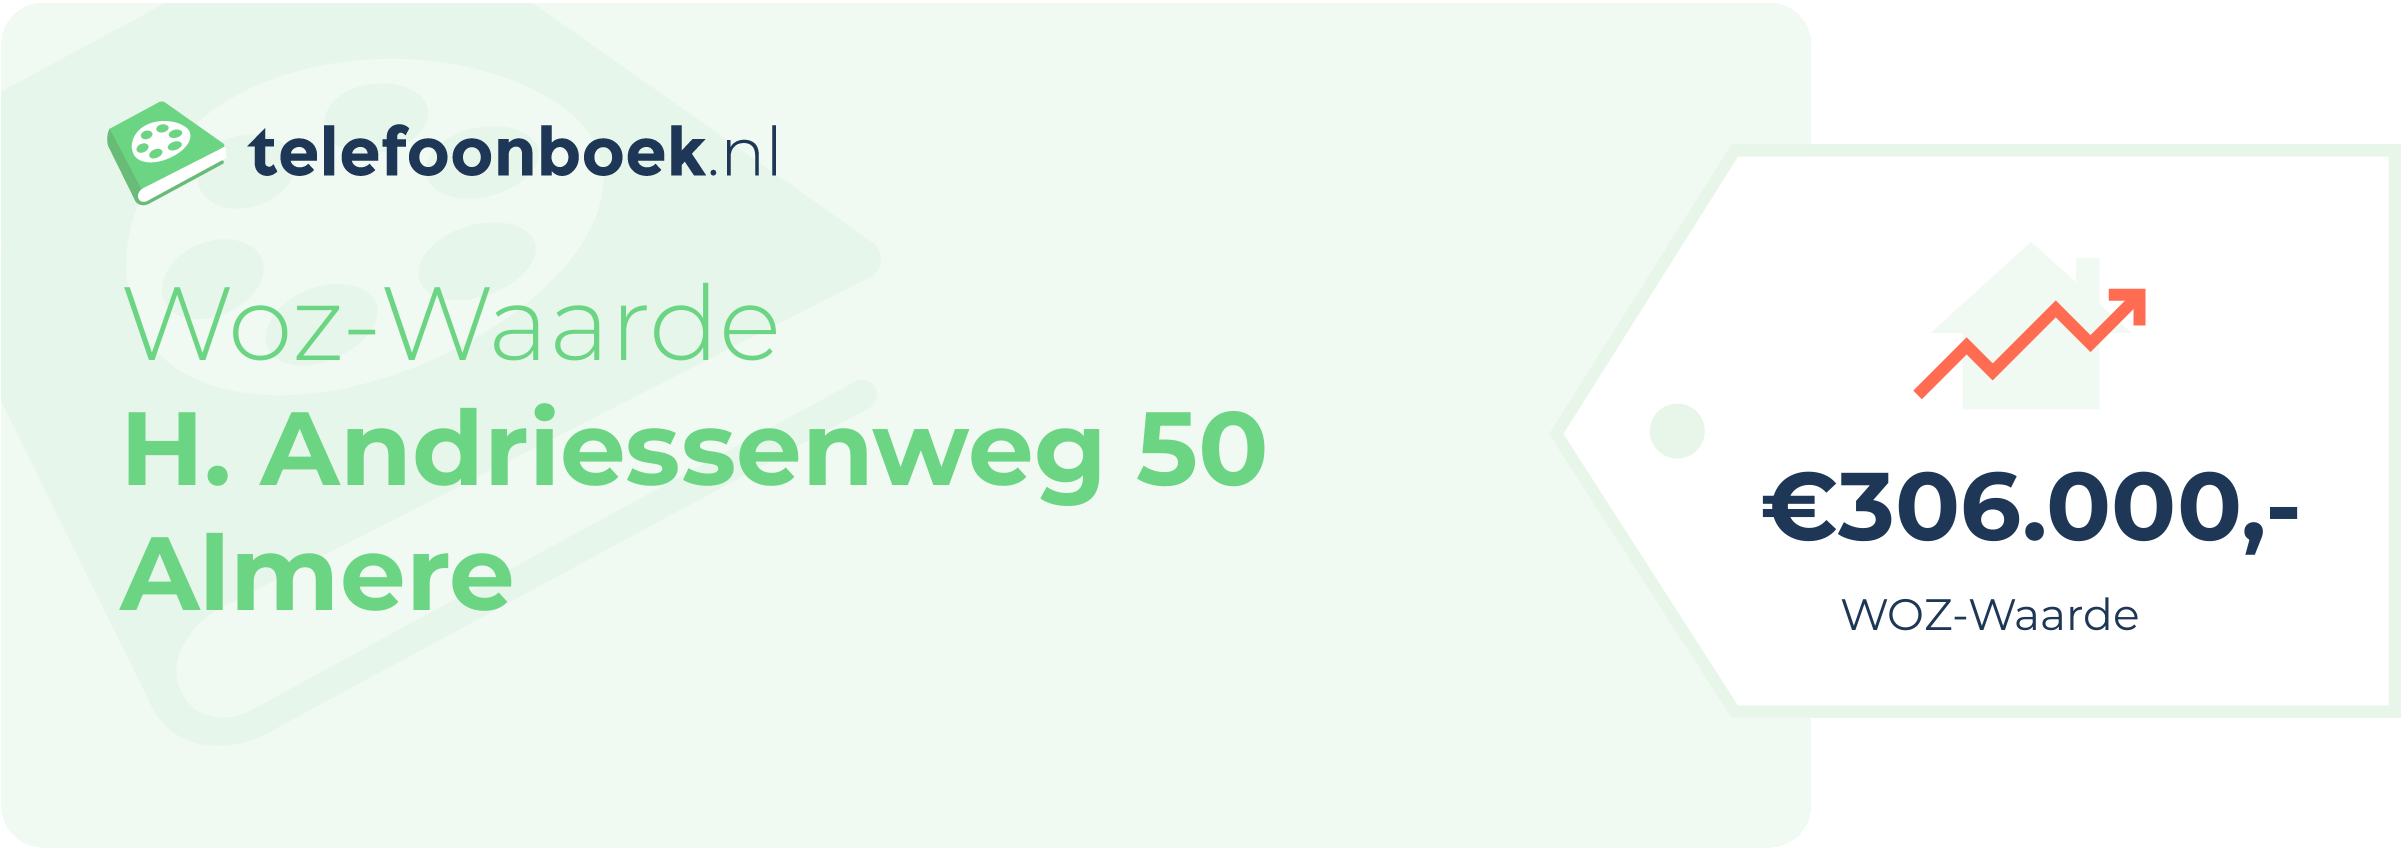 WOZ-waarde H. Andriessenweg 50 Almere